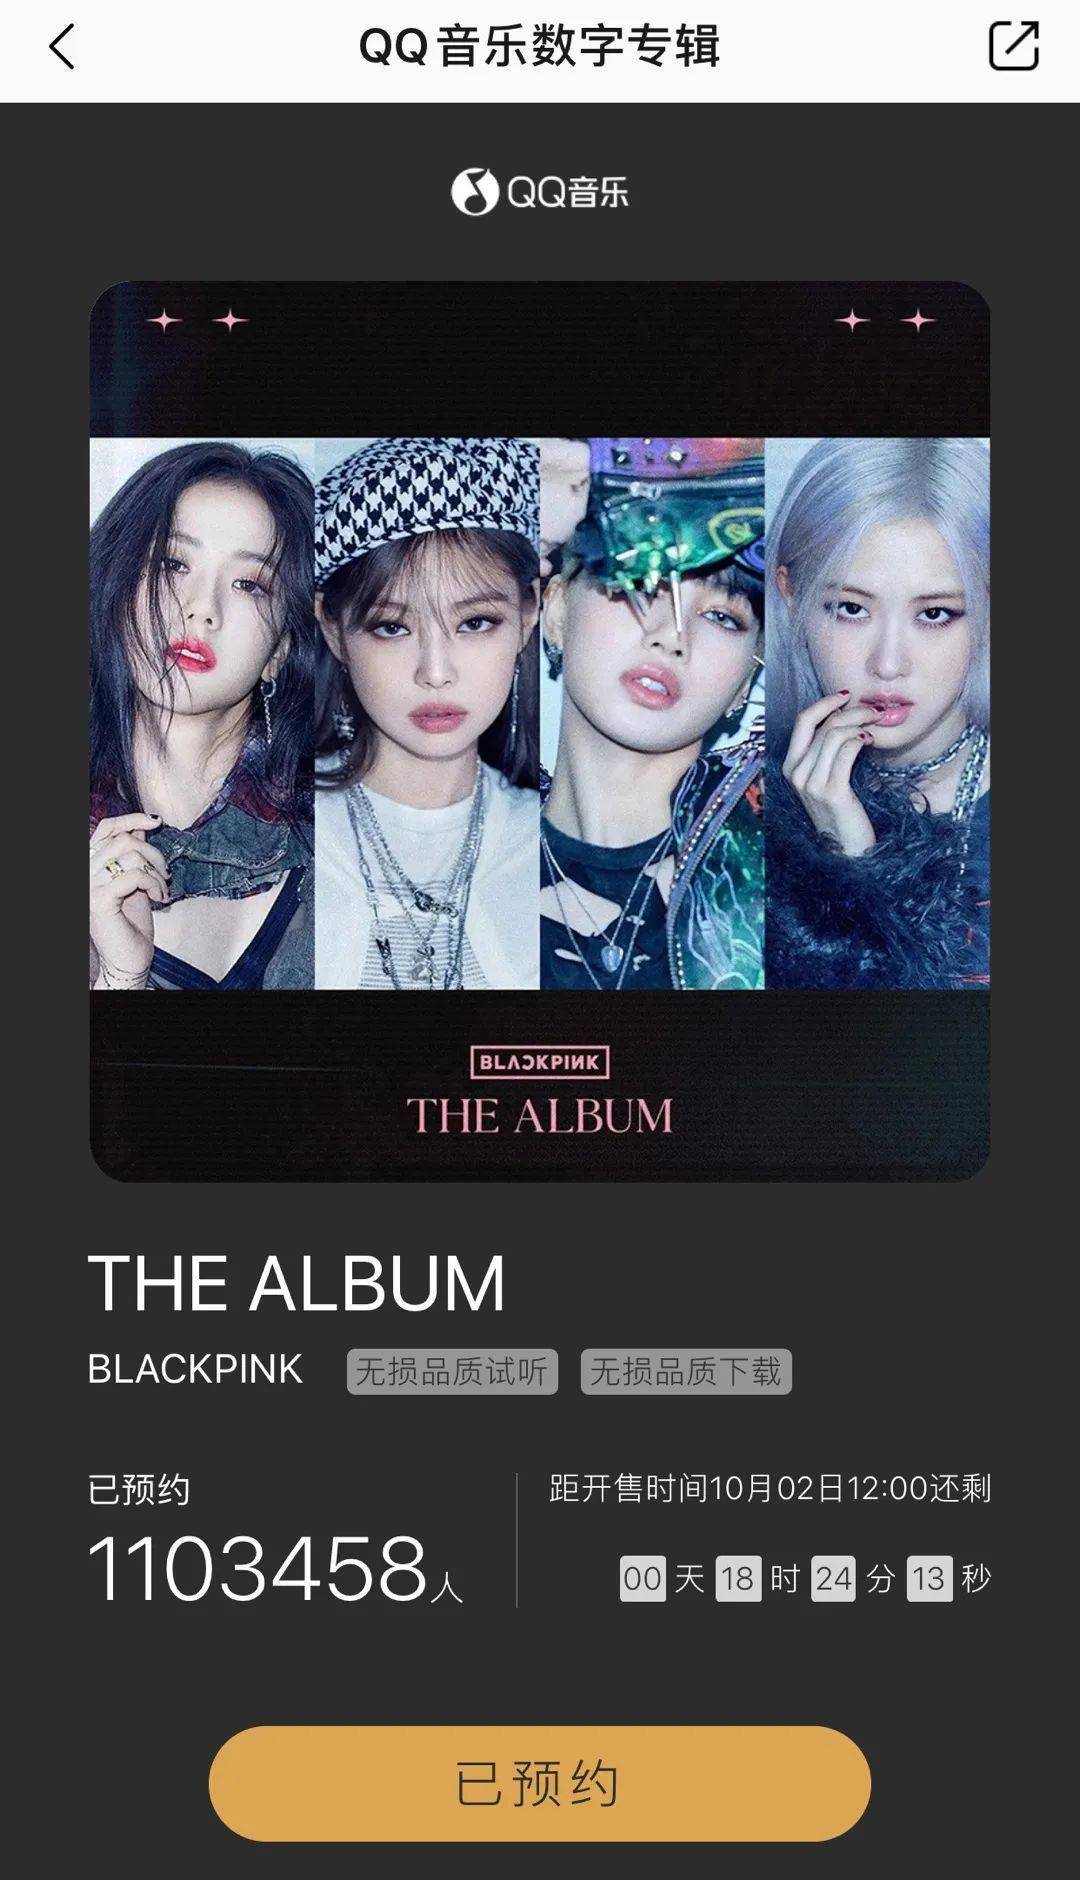 另外,blackpink首张正规专辑《the album》在qq音乐平台预约人数已